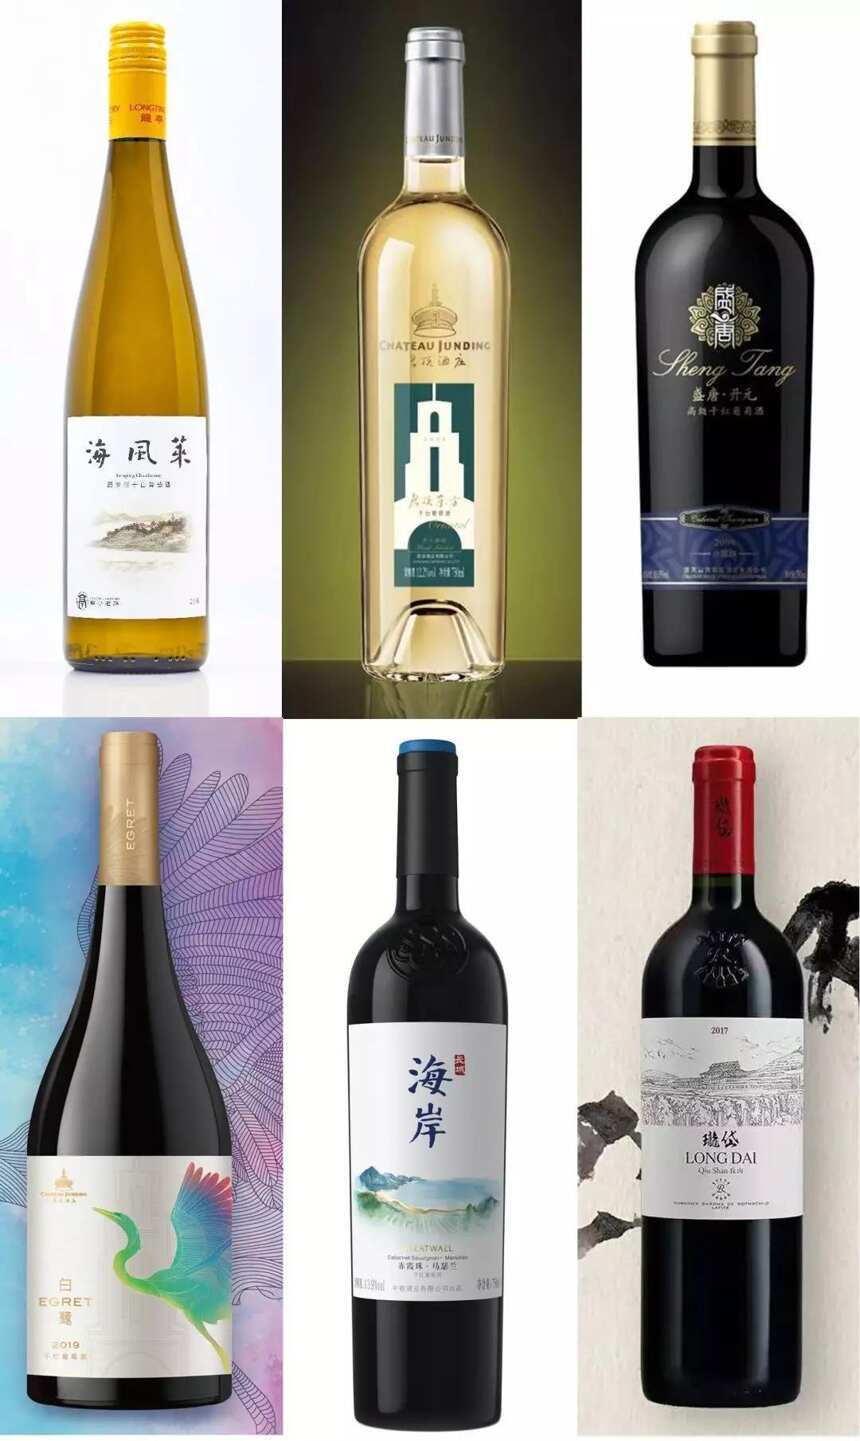 号外！2019蓬莱产区五色海岸新酒节要来北京啦！葡萄酒迷的盛大狂欢！（含报名通道）